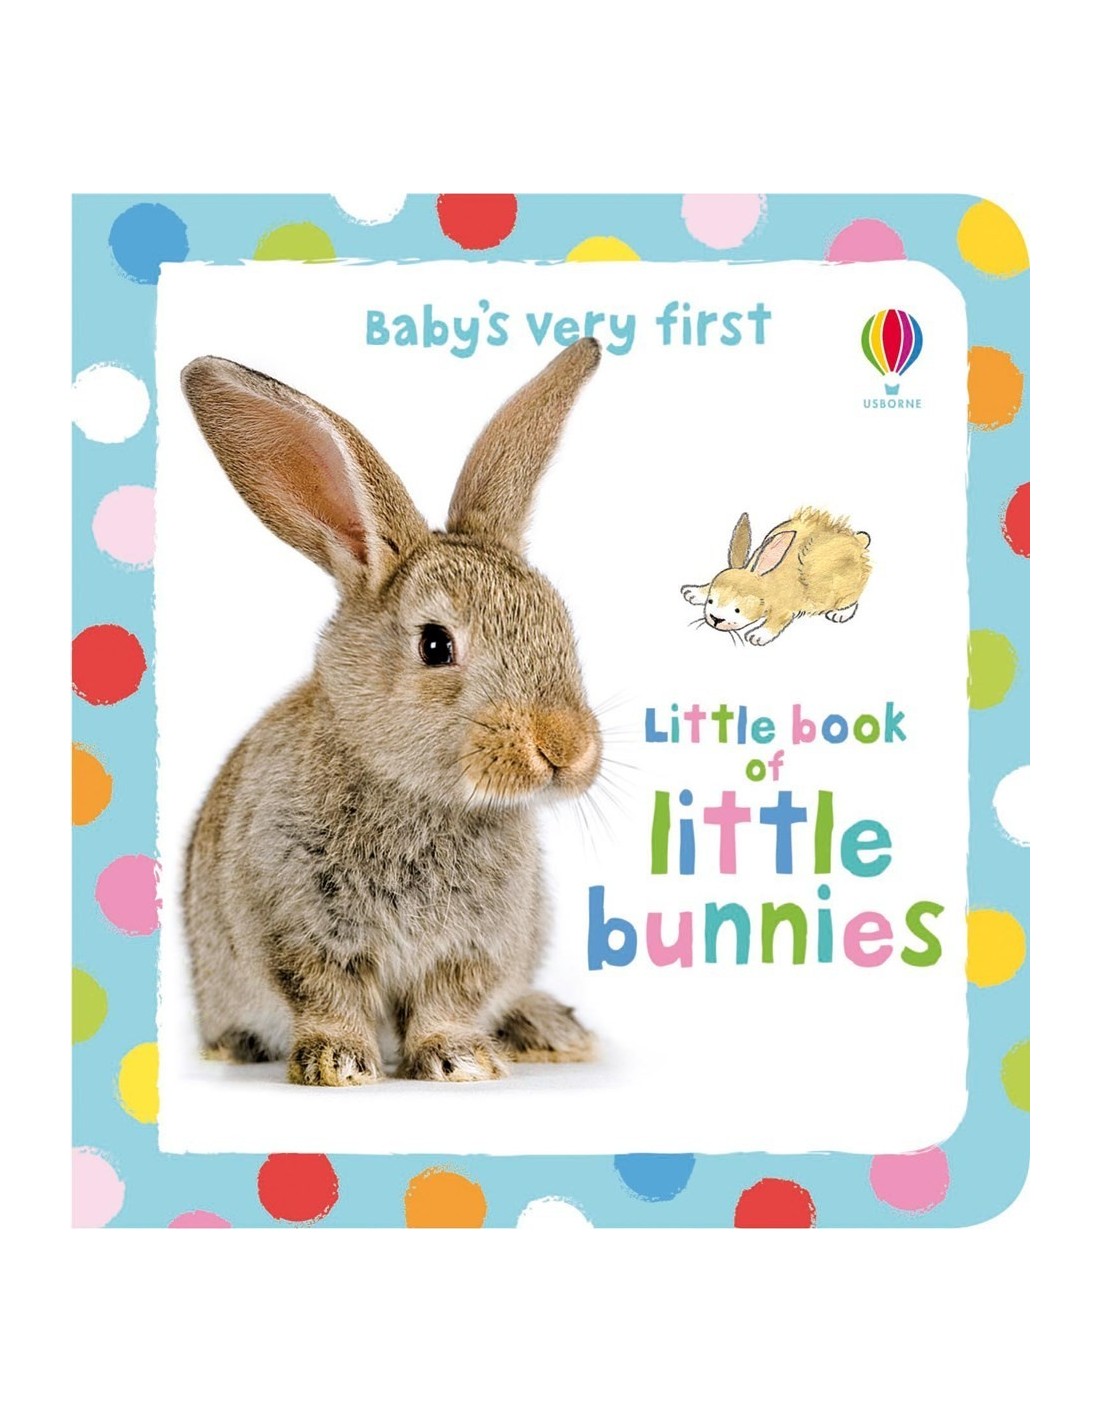 Little book of little bunnies